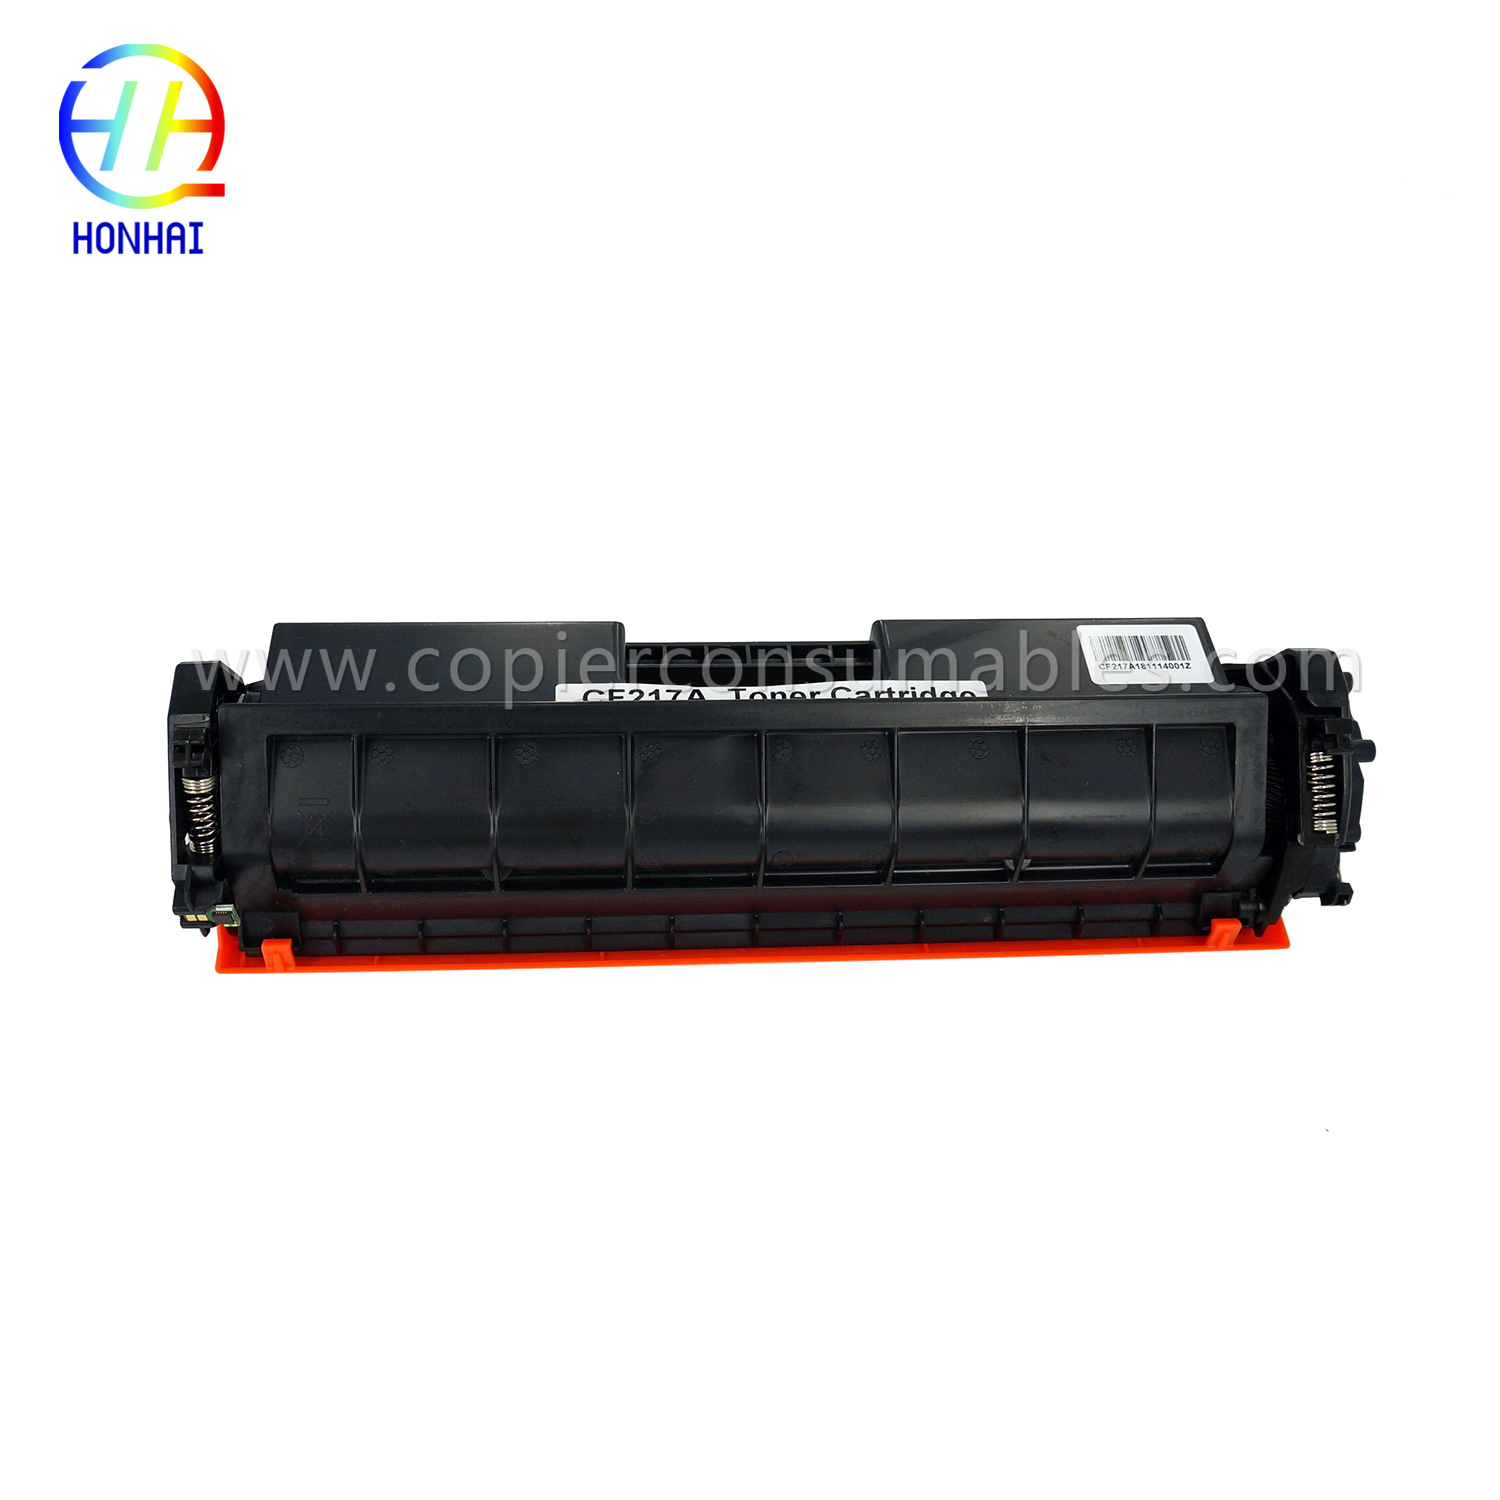 Cartúis Toner HP LaserJet Pro M102w MFP M130fn M130fw (CF217A 17A) (3) 拷贝